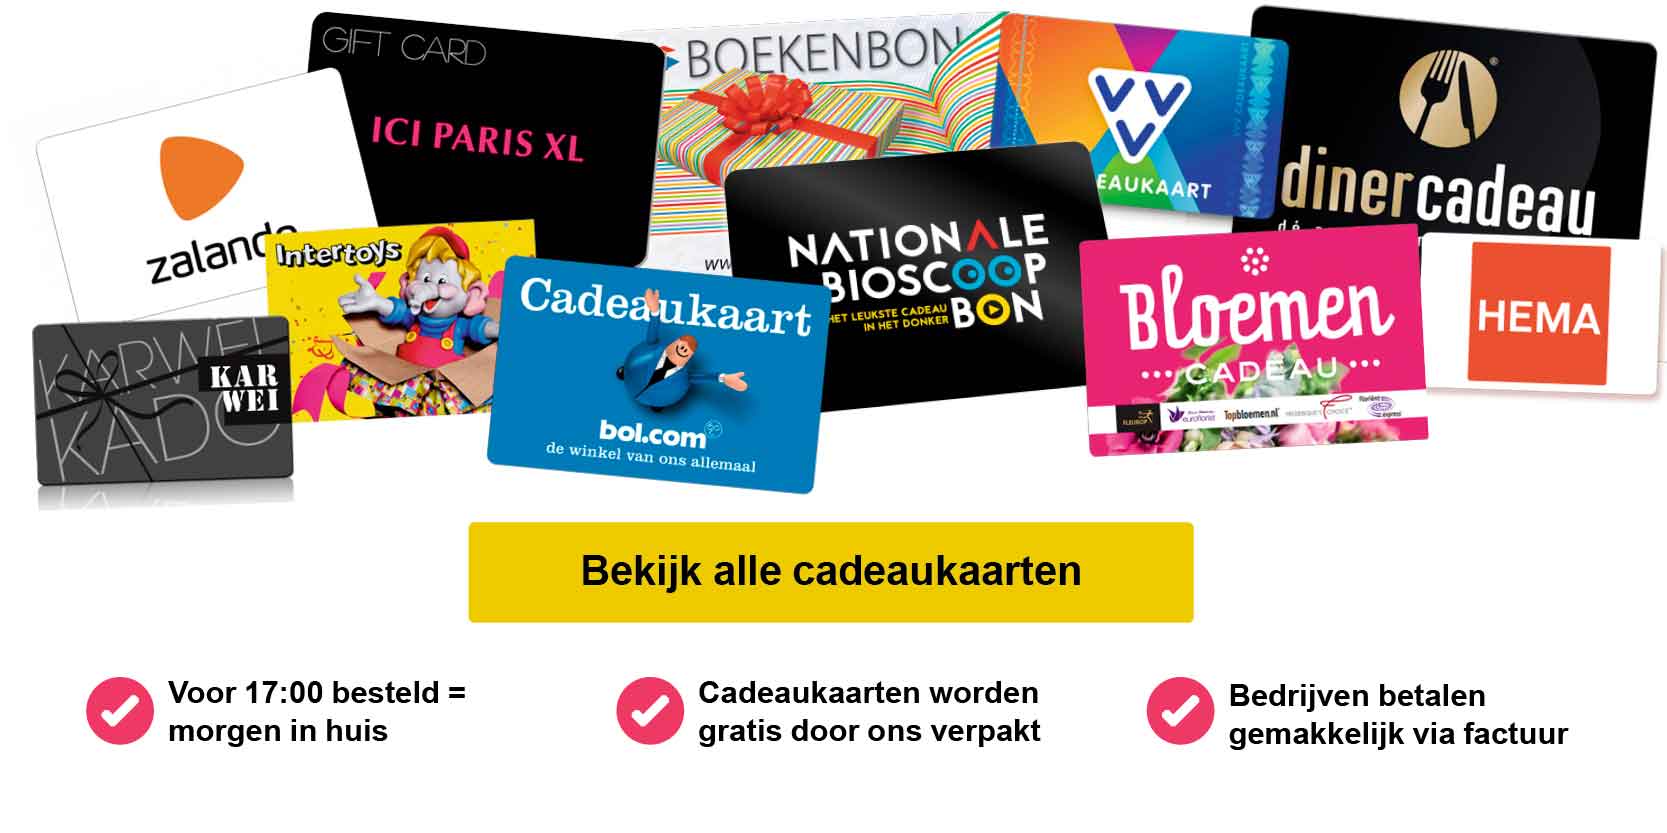 Nederlandse boekenbon online kopen? | Boekencadeaukaart |